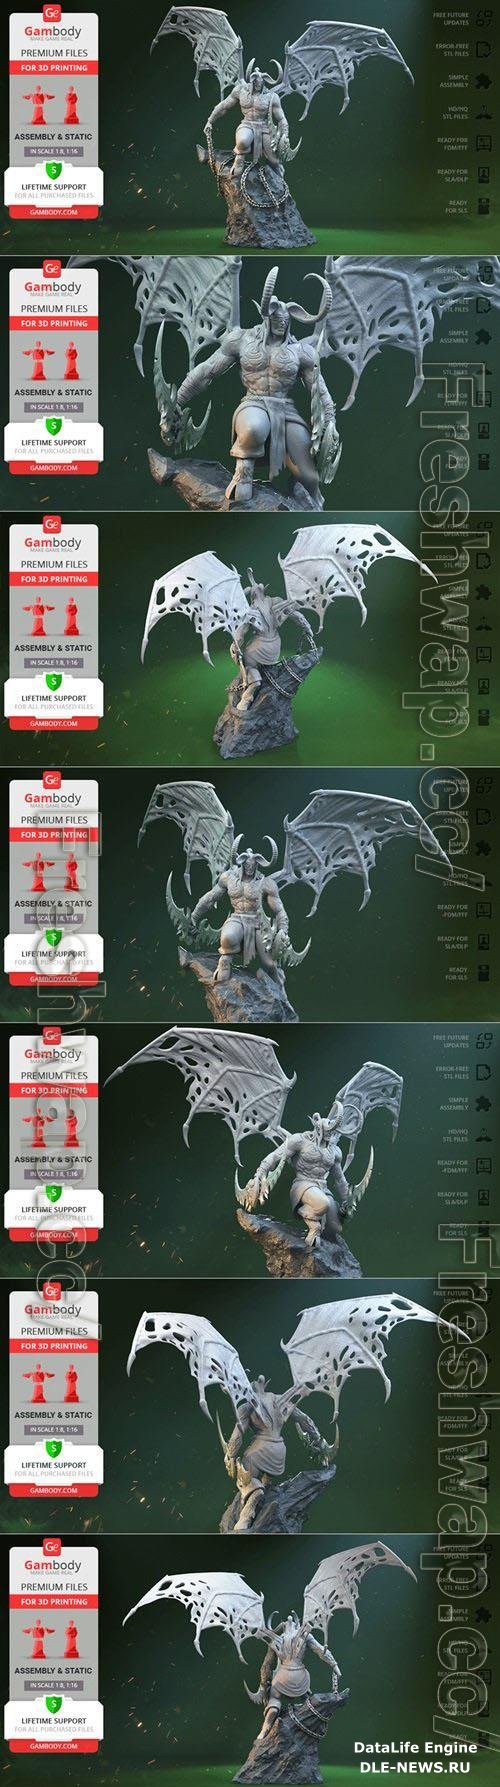 Illidan Stormrage 3D Print